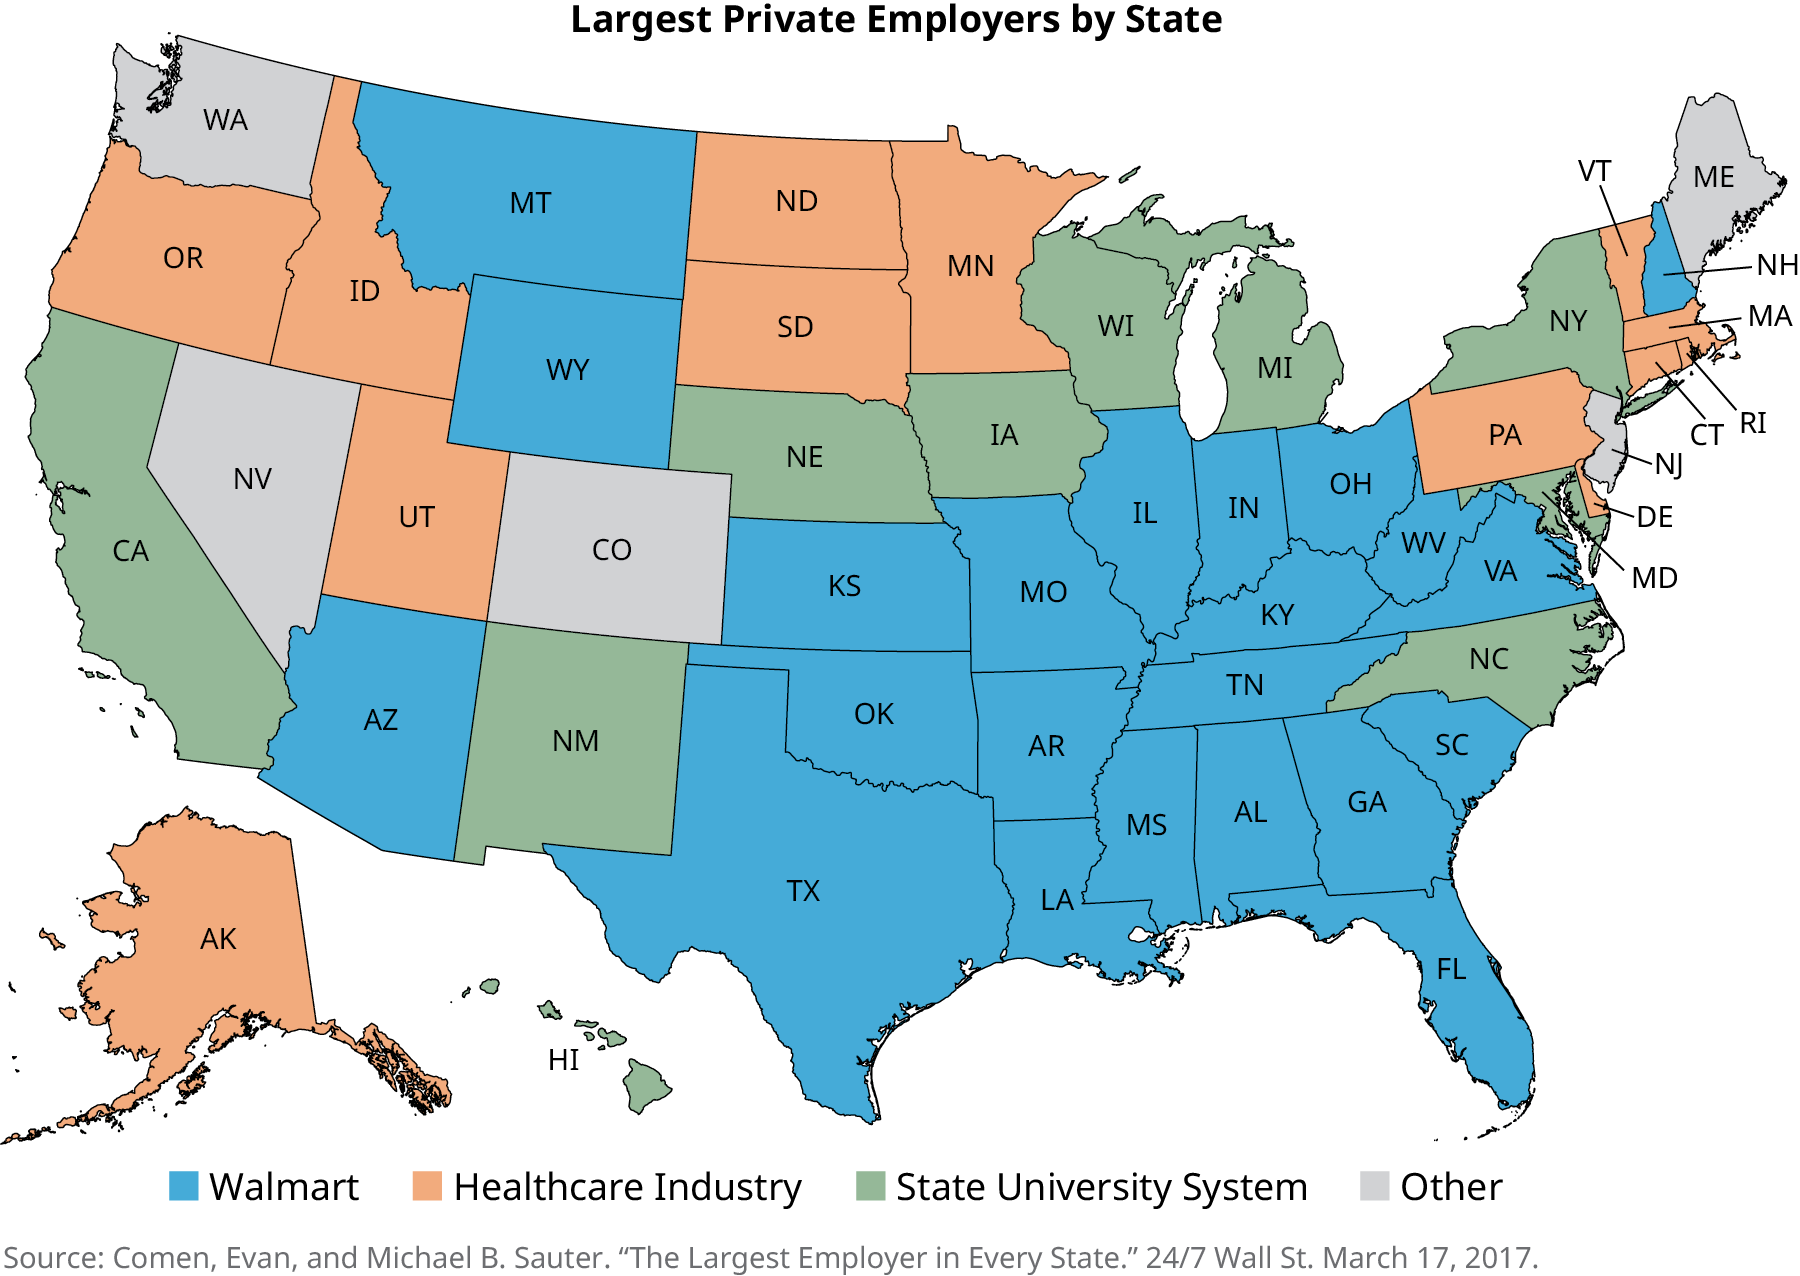 Um mapa dos Estados Unidos é intitulado “Maiores empregadores privados por estado”. Os estados onde o maior empregador é o Walmart são Arizona, Montana, Wyoming, Kansas, Oklahoma, Texas, Missouri, Arkansas, Louisiana, Mississippi, Alabama, Tennessee, Kentucky, Illinois, Indiana, Ohio, Virgínia Ocidental, Virgínia, New Hampshire, Carolina do Sul, Geórgia e Flórida. Os estados em que o maior empregador é o setor de saúde são Alasca, Oregon, Idaho, Utah, Dakota do Norte, Dakota do Sul, Minnesota, Pensilvânia, Delaware, Vermont, Massachusetts, Rhode Island e Connecticut. Os estados em que o maior empregador é o sistema universitário estadual são Califórnia, Novo México, Nebraska, Iowa, Wisconsin, Michigan, Nova York, Maryland e Carolina do Norte. Os estados em que o maior empregador está listado como outros são Washington, Nevada, Colorado, Maine e Nova Jersey.